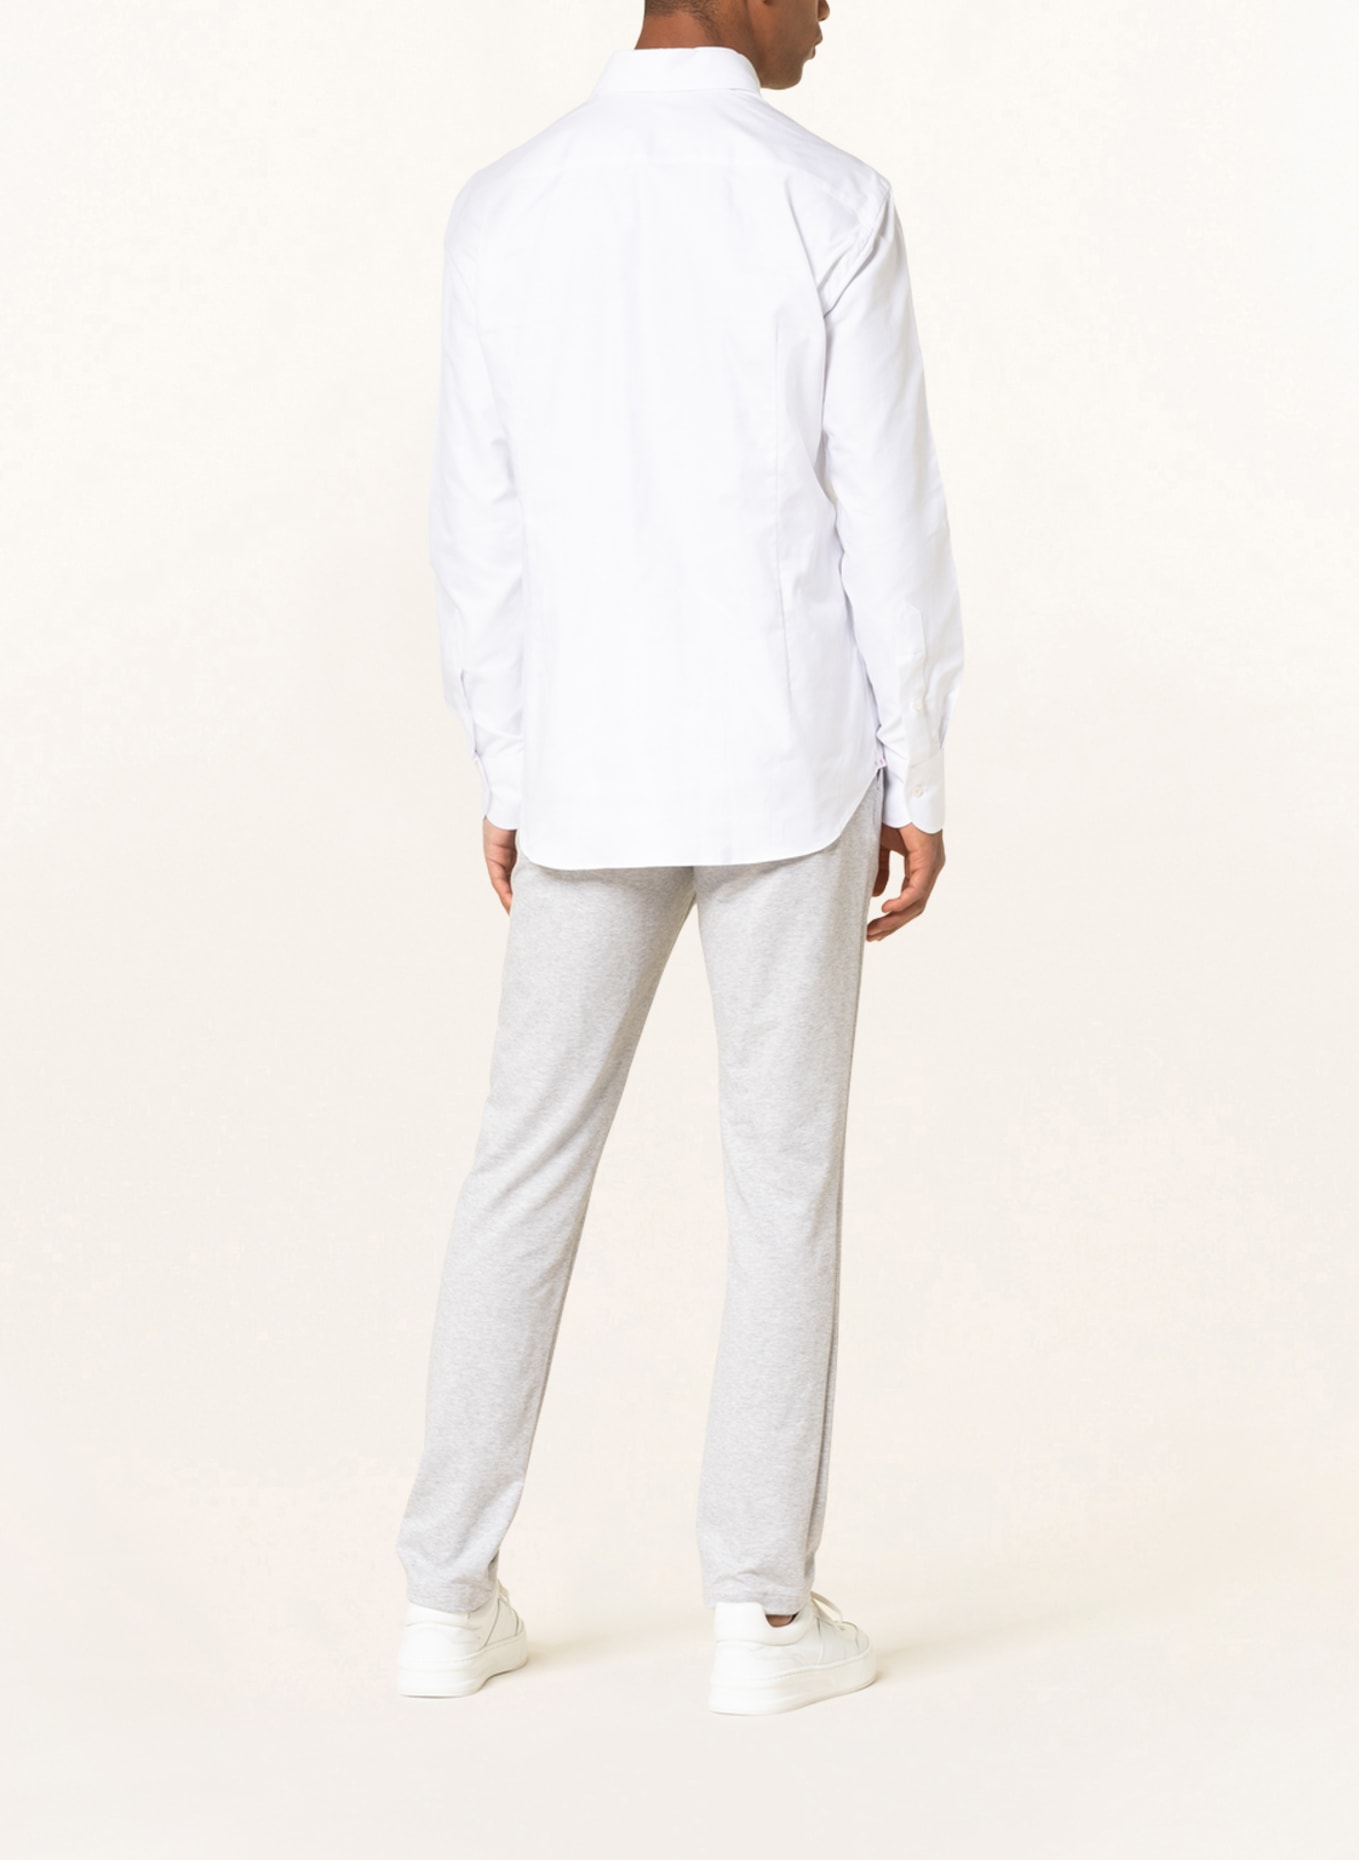 ARTIGIANO Piqué shirt classic fit , Color: WHITE (Image 3)